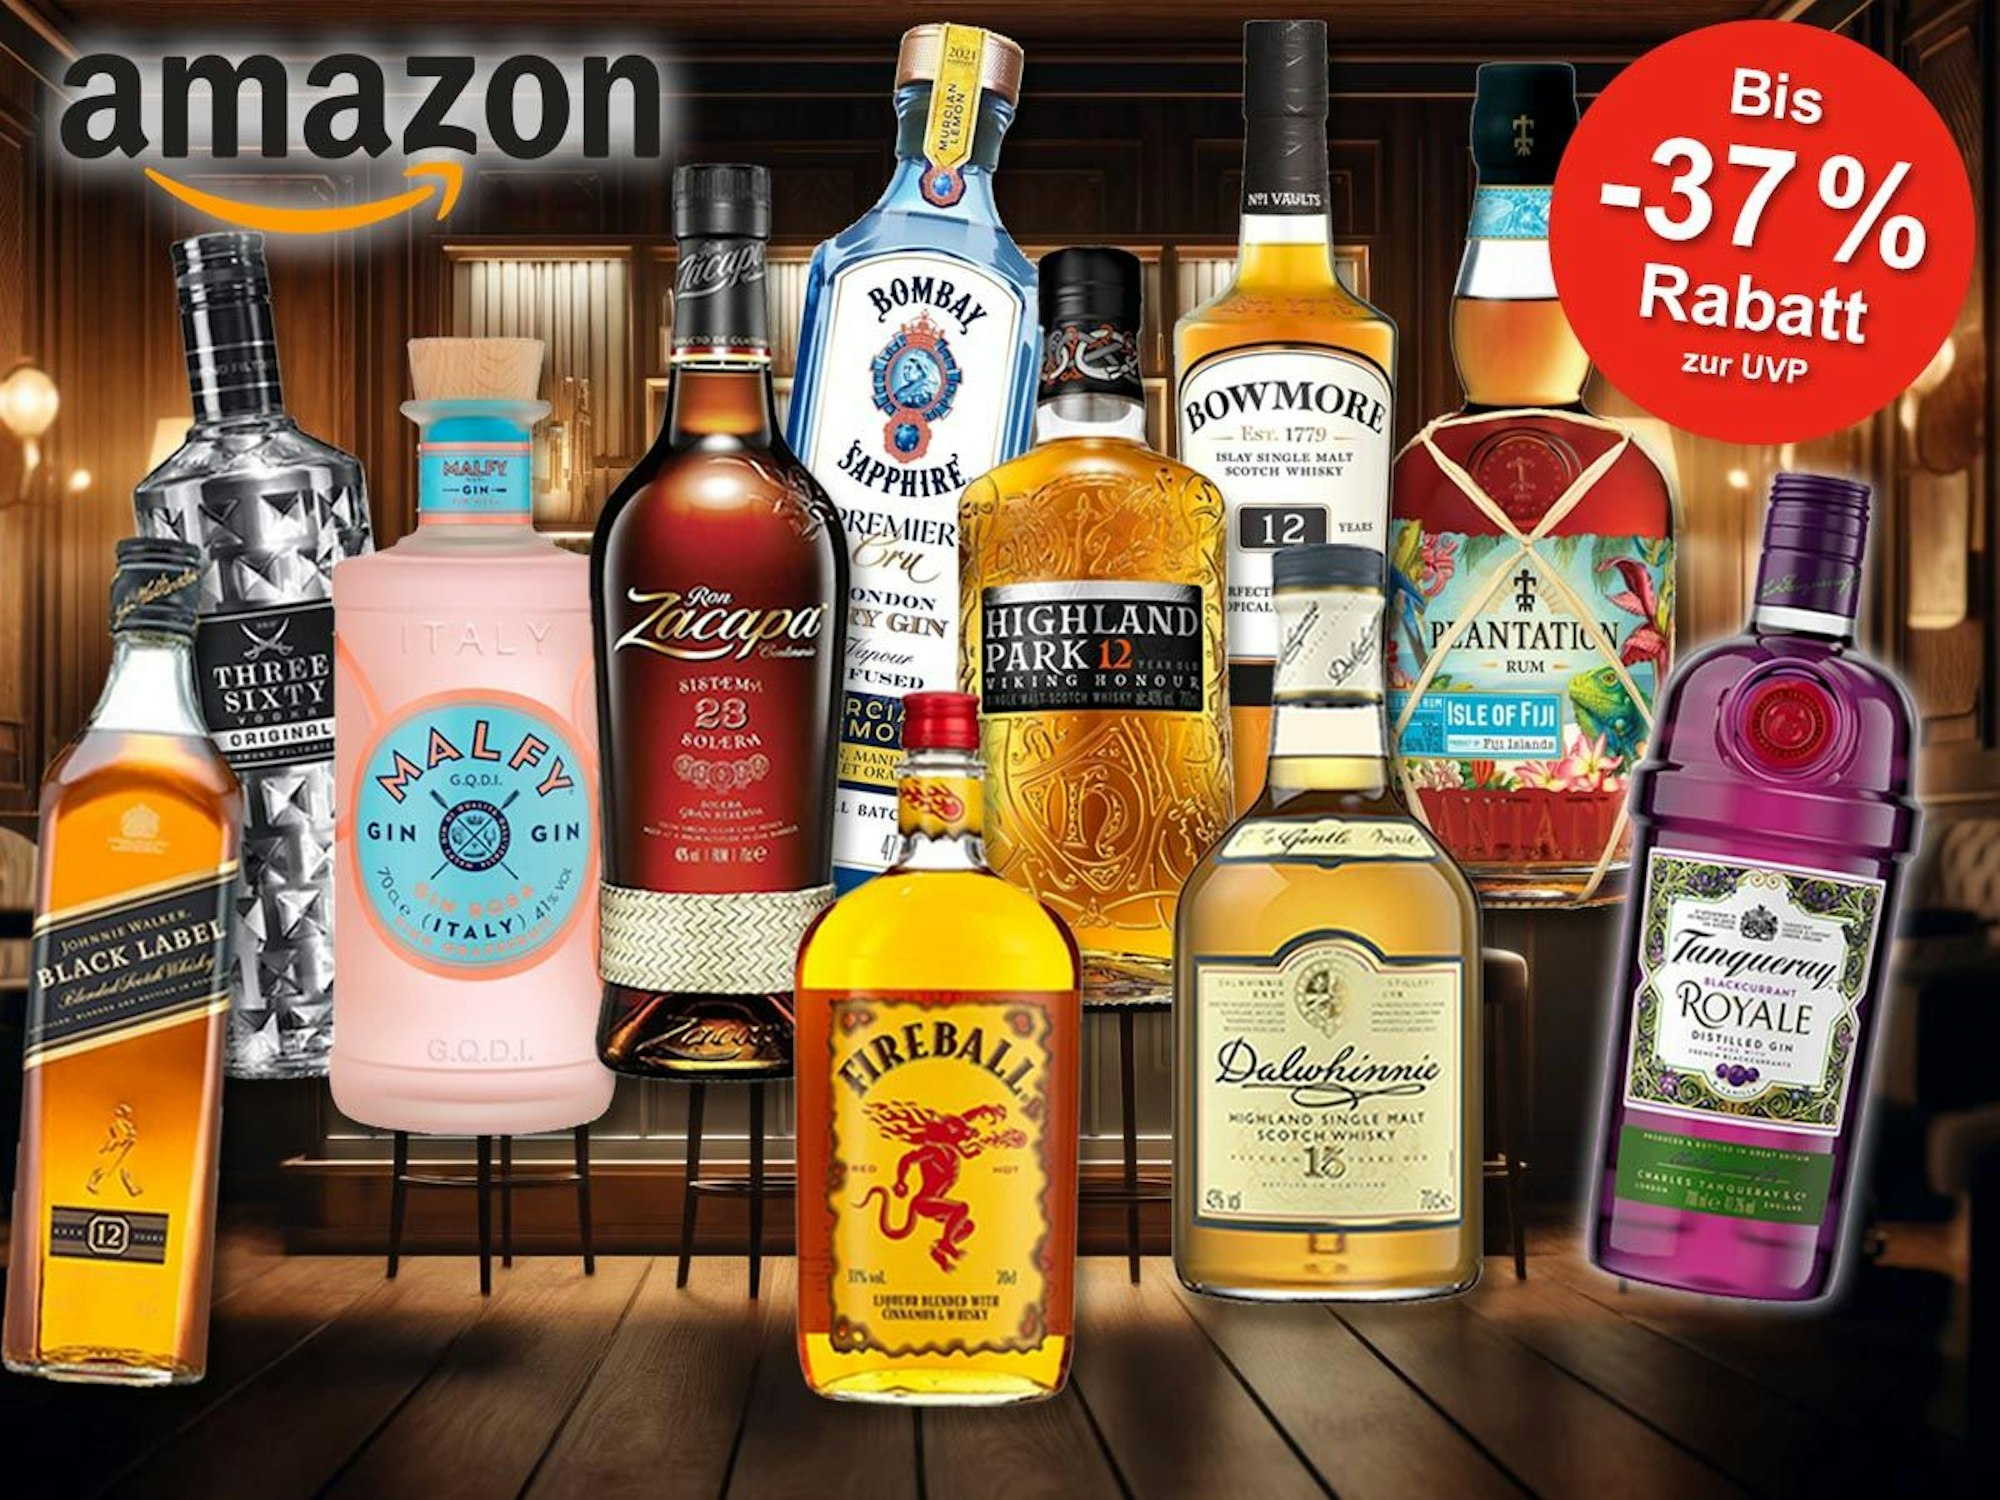 Viele Spirituosen Flaschen wie Whisky, Gin, Wodka und Rum vor einer schummrigen Bar im Hintergrund. Marken wie Tanqueray, Plantation, Rum, Fireball, Highland Park, Malfy, Bombay, Zacapa, Johnny Walker.